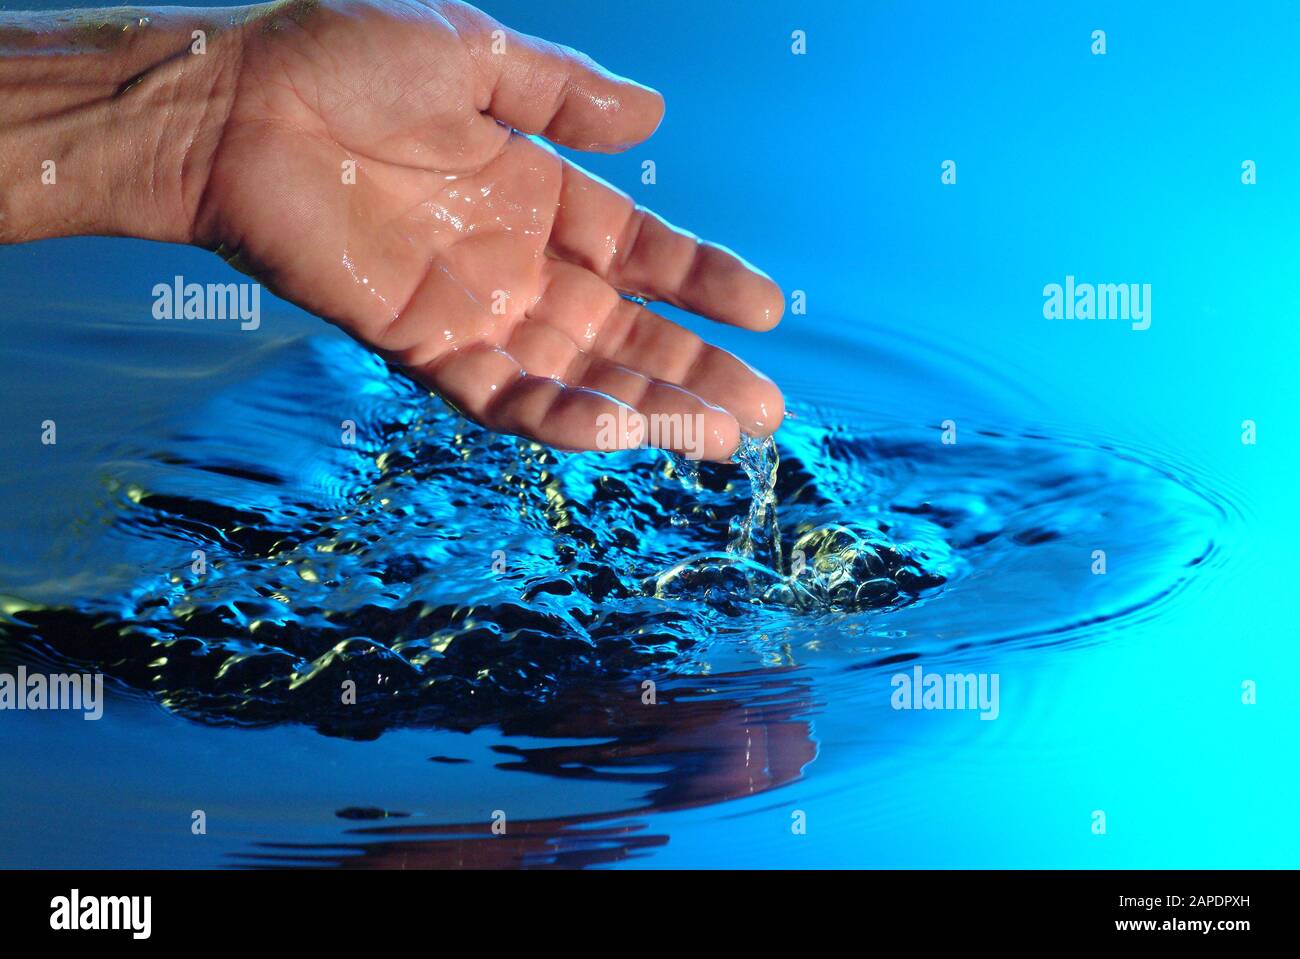 Eine Hand greift ins Wasser - A Hand in the Water Stock Photo